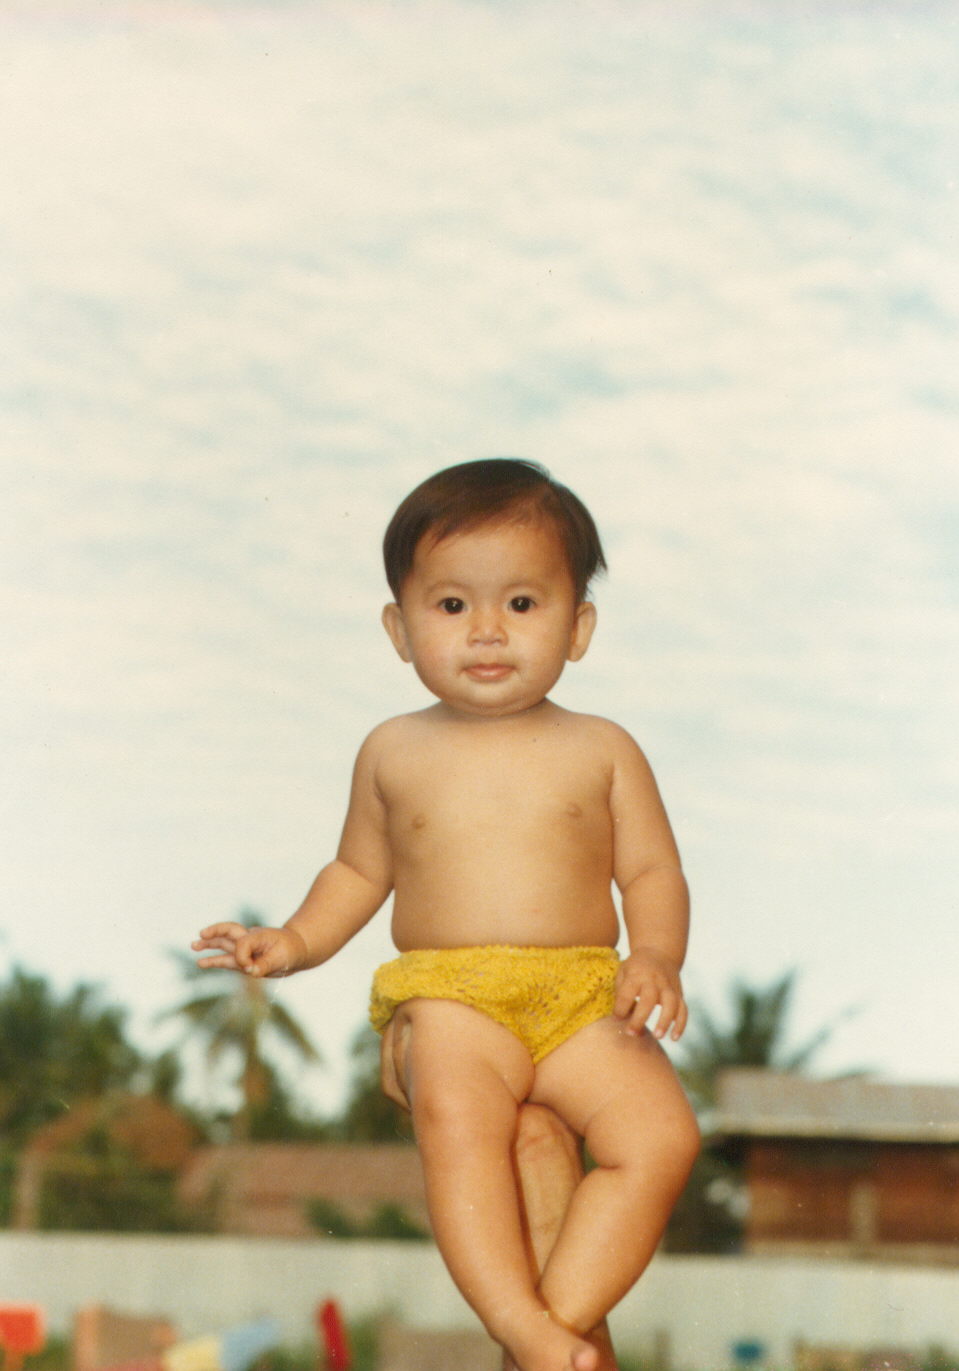 Helena age 2, Thai refugee camp.